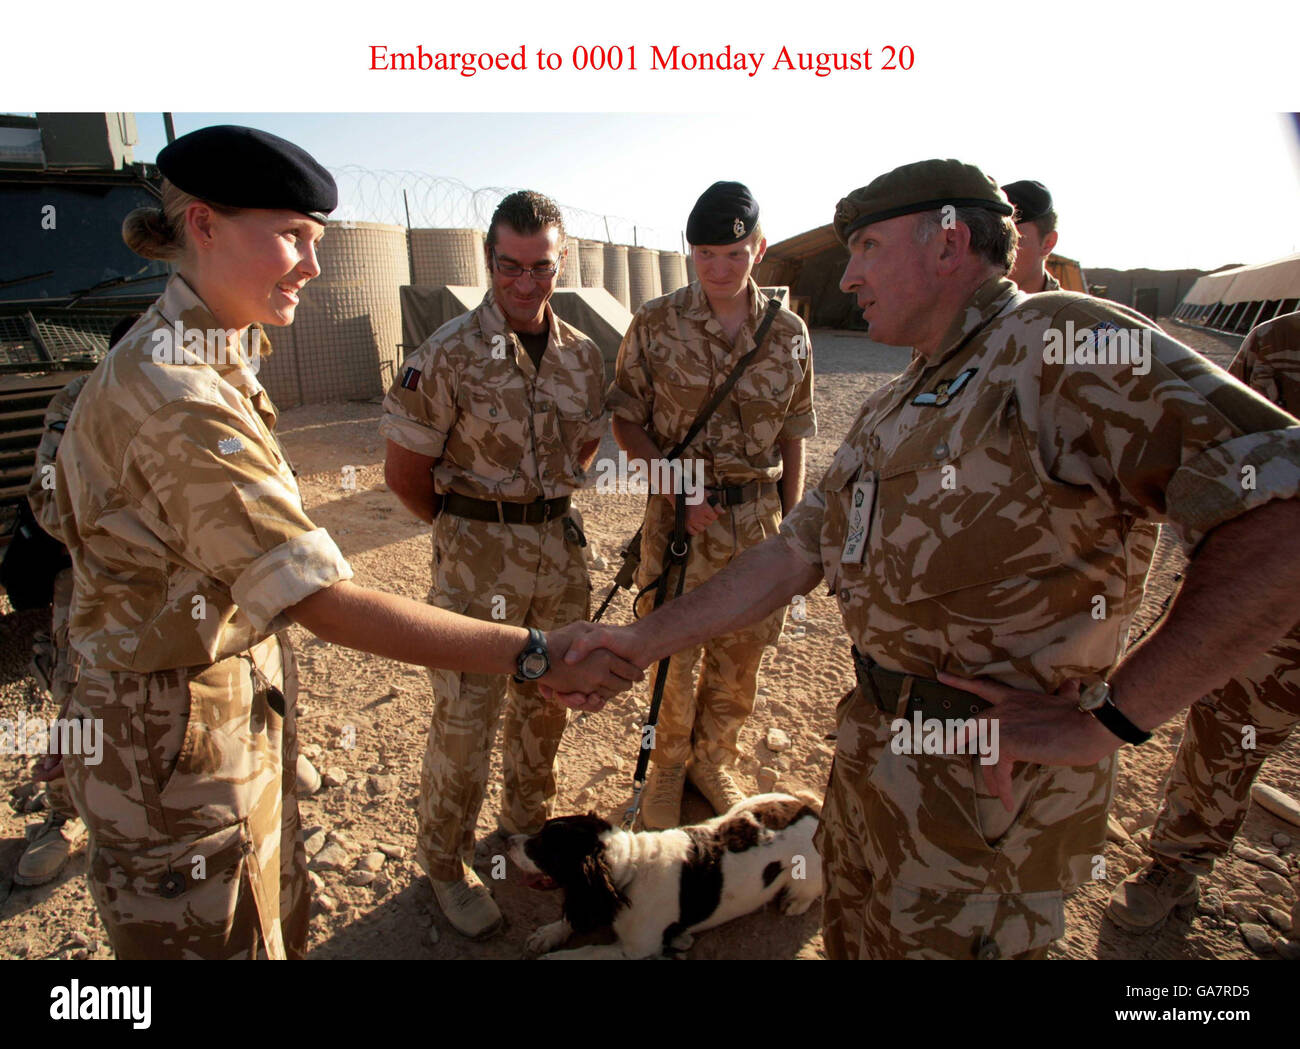 Il capo dello staff generale Sir Richard Dannatt parla alle truppe dopo essere arrivate a Camp Price, Gerashk, nell'Afghanistan meridionale, per visitare le truppe britanniche nell'ambito di una visita di due giorni nel paese, sabato 18 agosto. Foto Stock